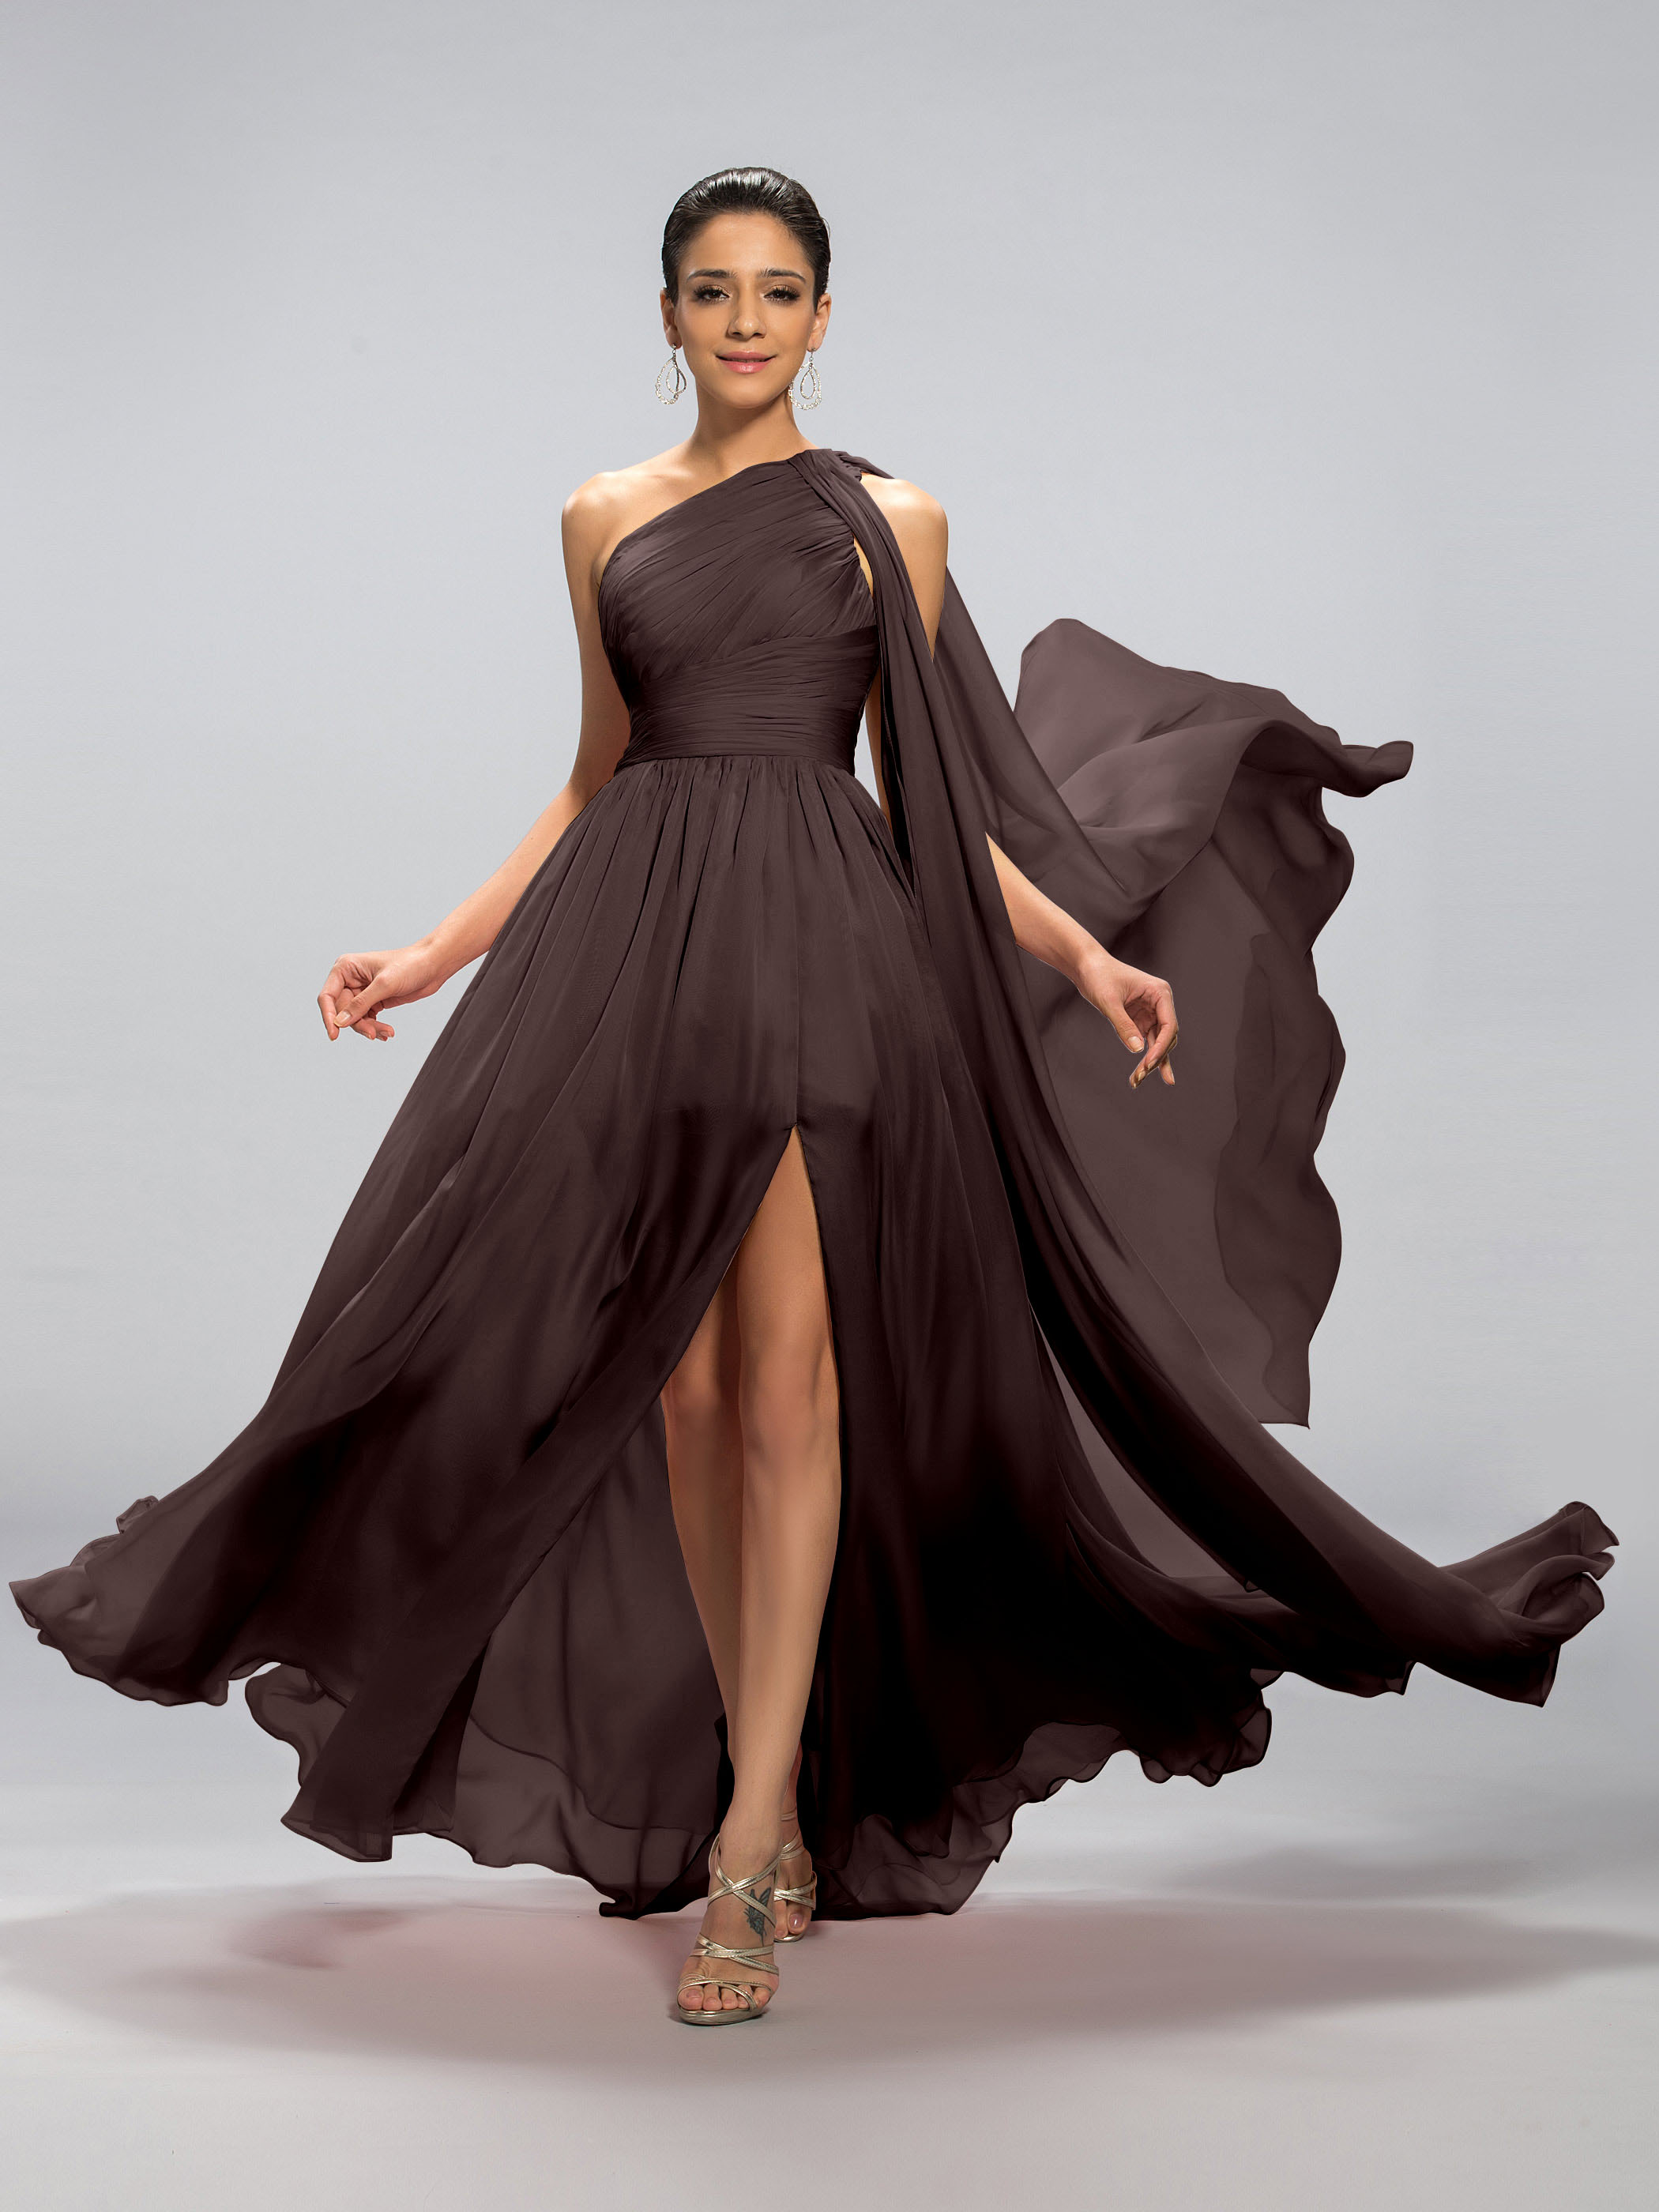 One-Shoulder Pleats Rose Quartz Dress Split-Front Evening Dress